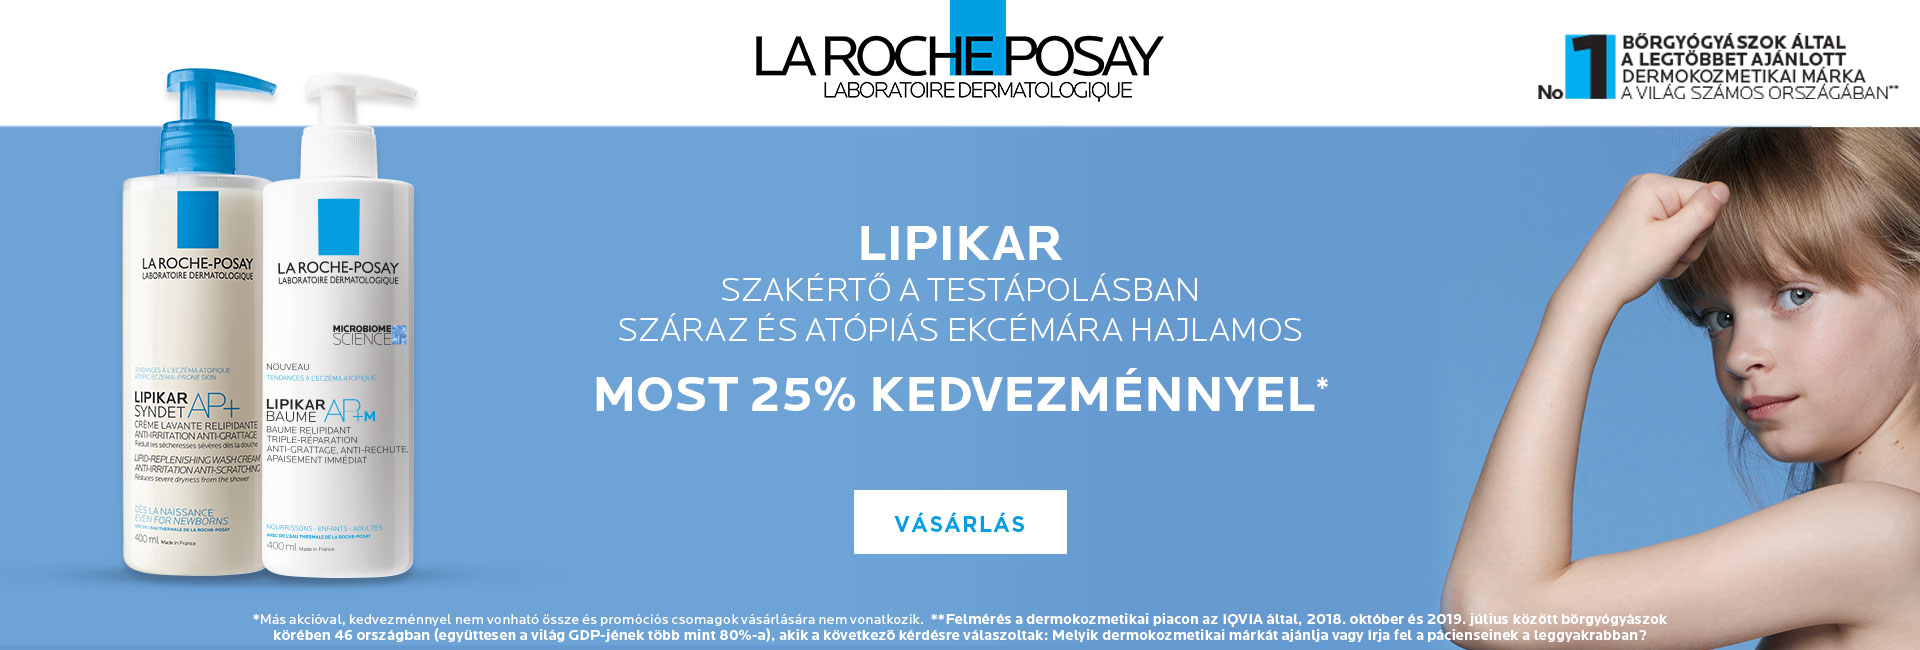 La Roche-Posay Lipikar különleges ajánlat: 2021. január 11-18. között 25% kedvezményt adunk minden Lipikar termékre!